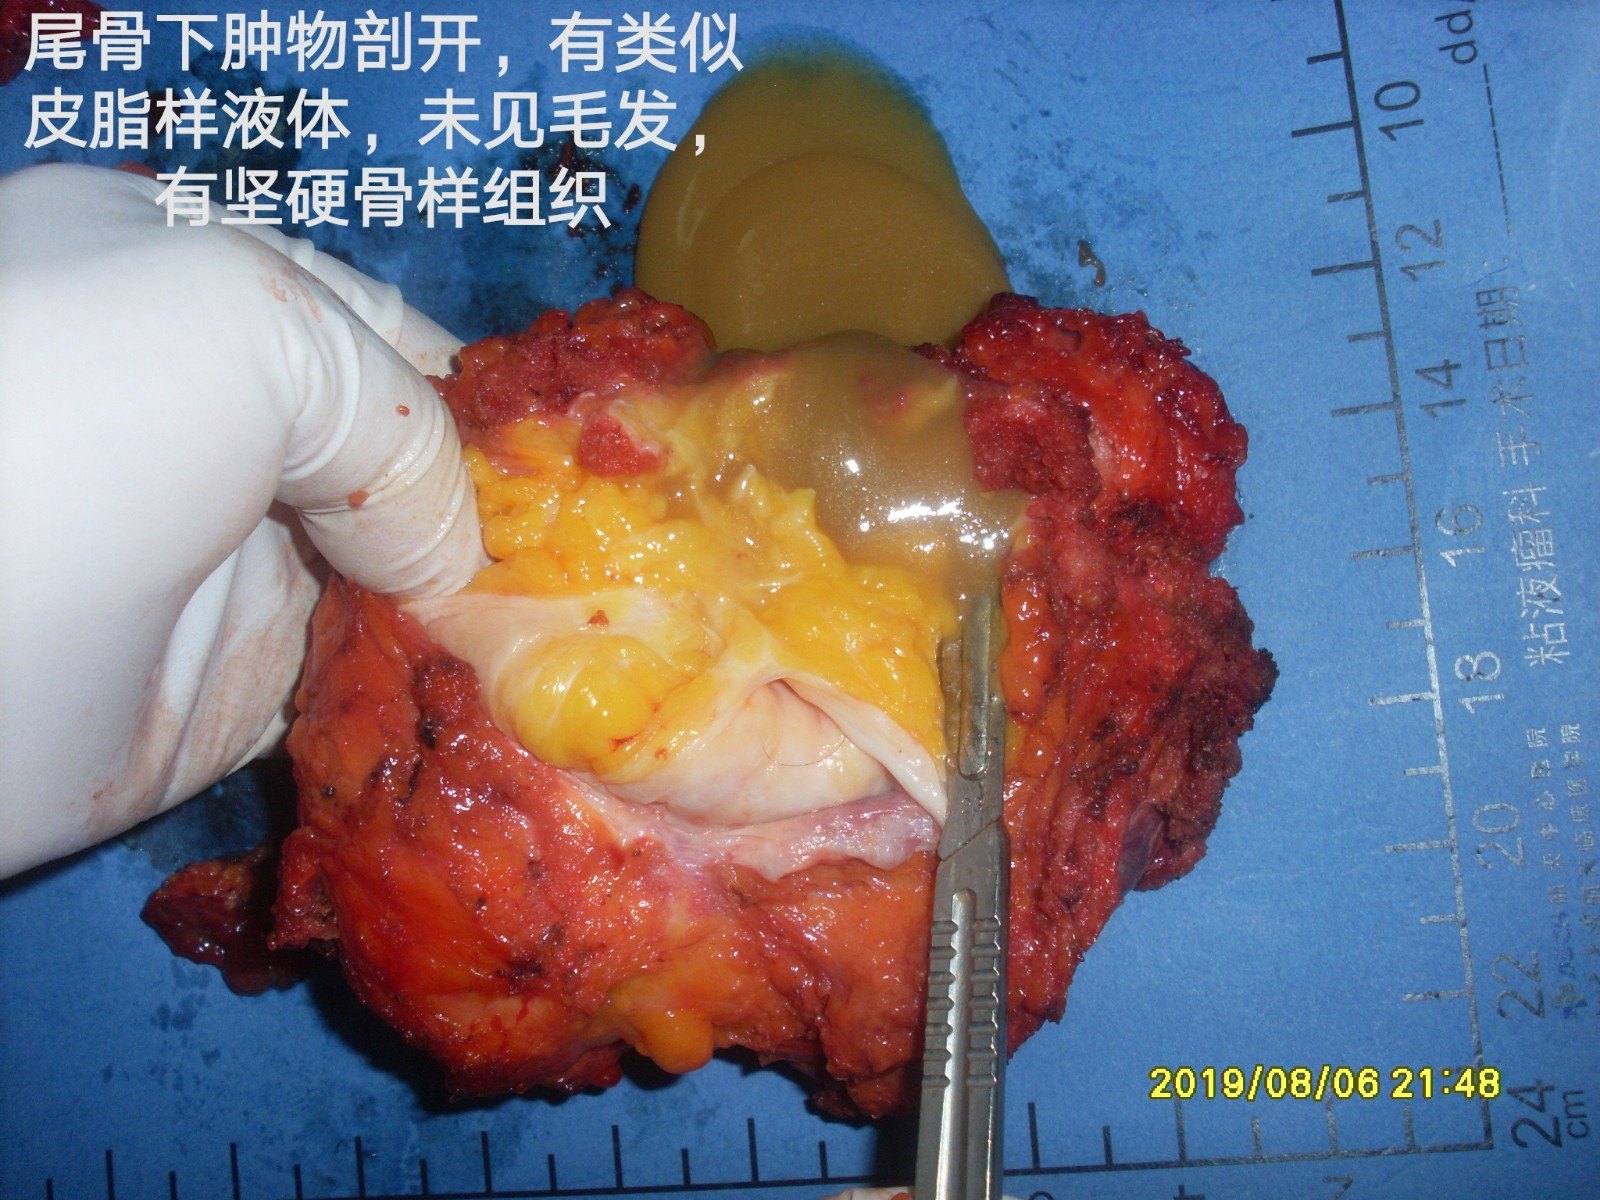 病例110--骶尾部先天性黏液性畸胎瘤复发累及腹腔成pmp